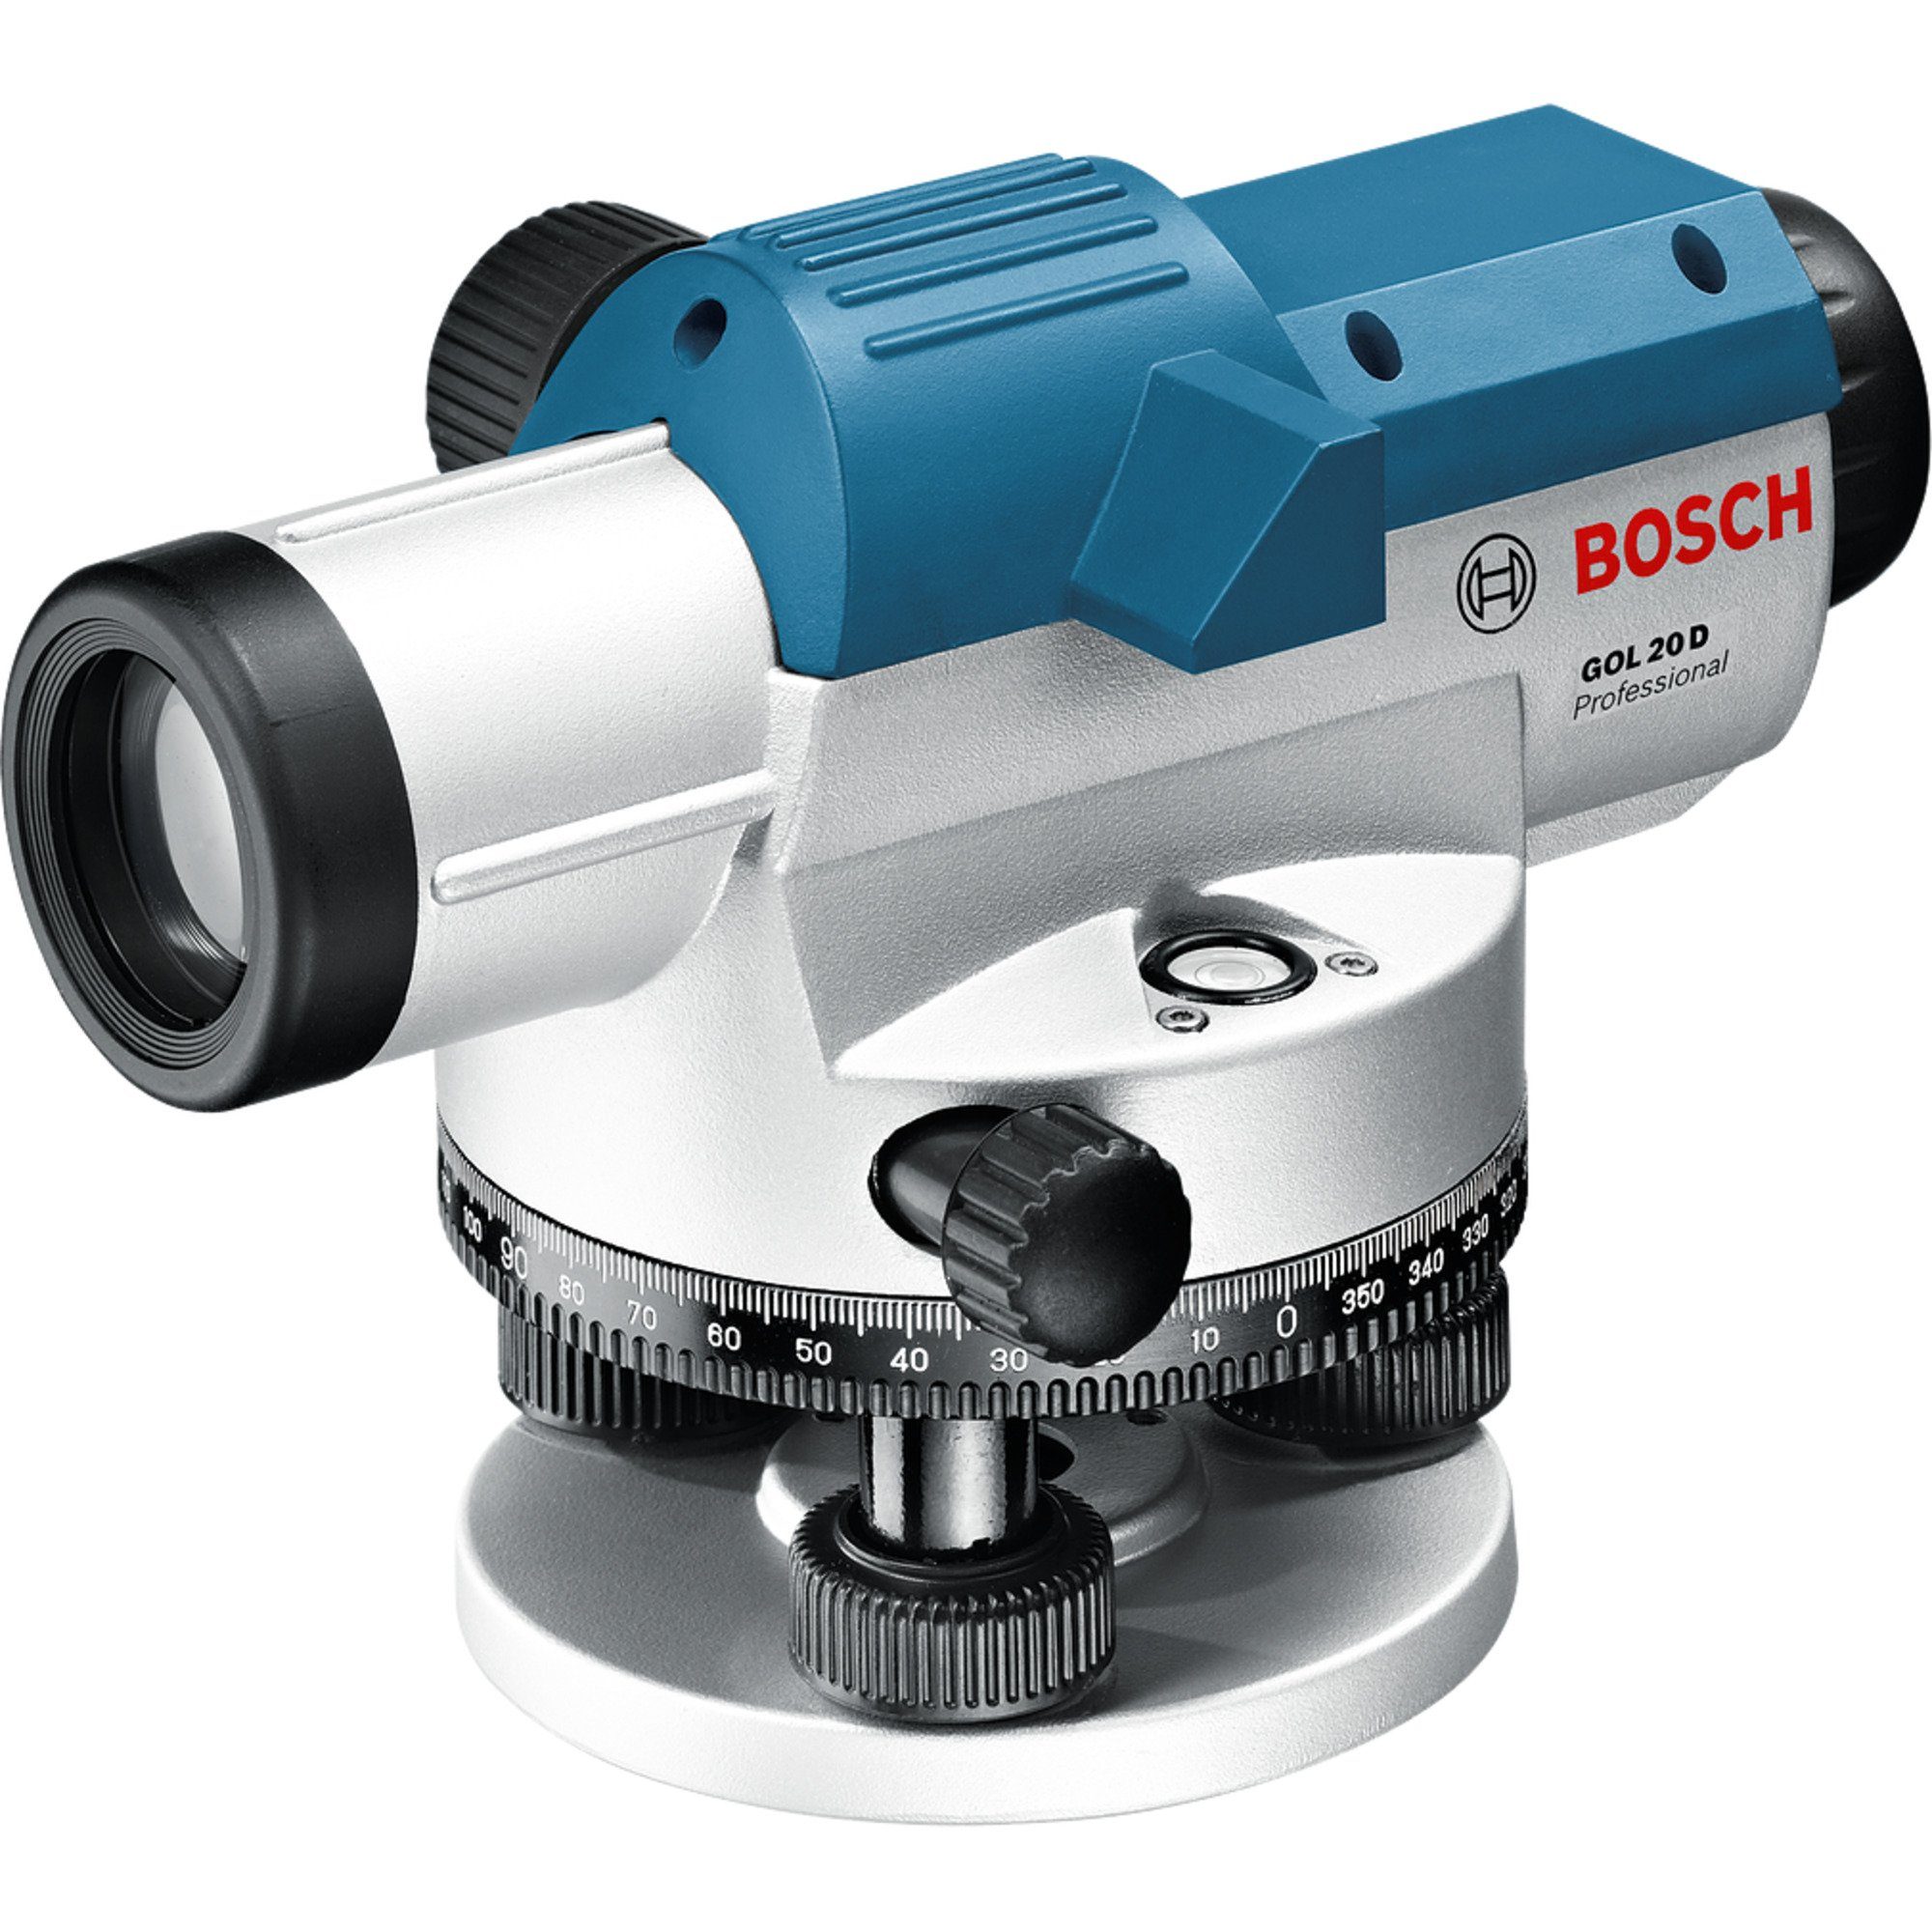 BOSCH Akku-Multifunktionswerkzeug Nivelliergerät 20 Bosch GOL Professional Optisches